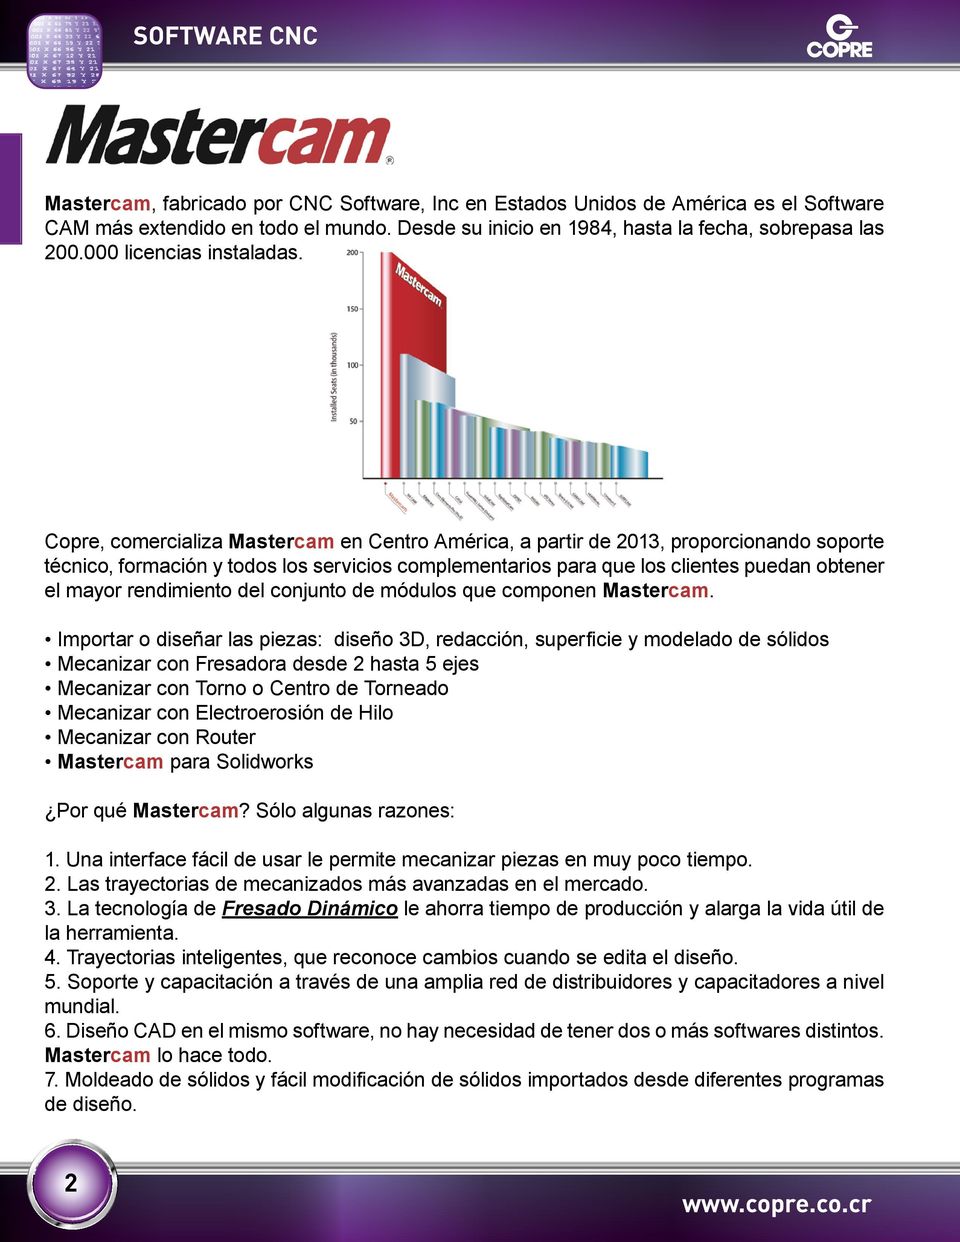 Copre, comercializa Mastercam en Centro América, a partir de 2013, proporcionando soporte técnico, formación y todos los servicios complementarios para que los clientes puedan obtener el mayor